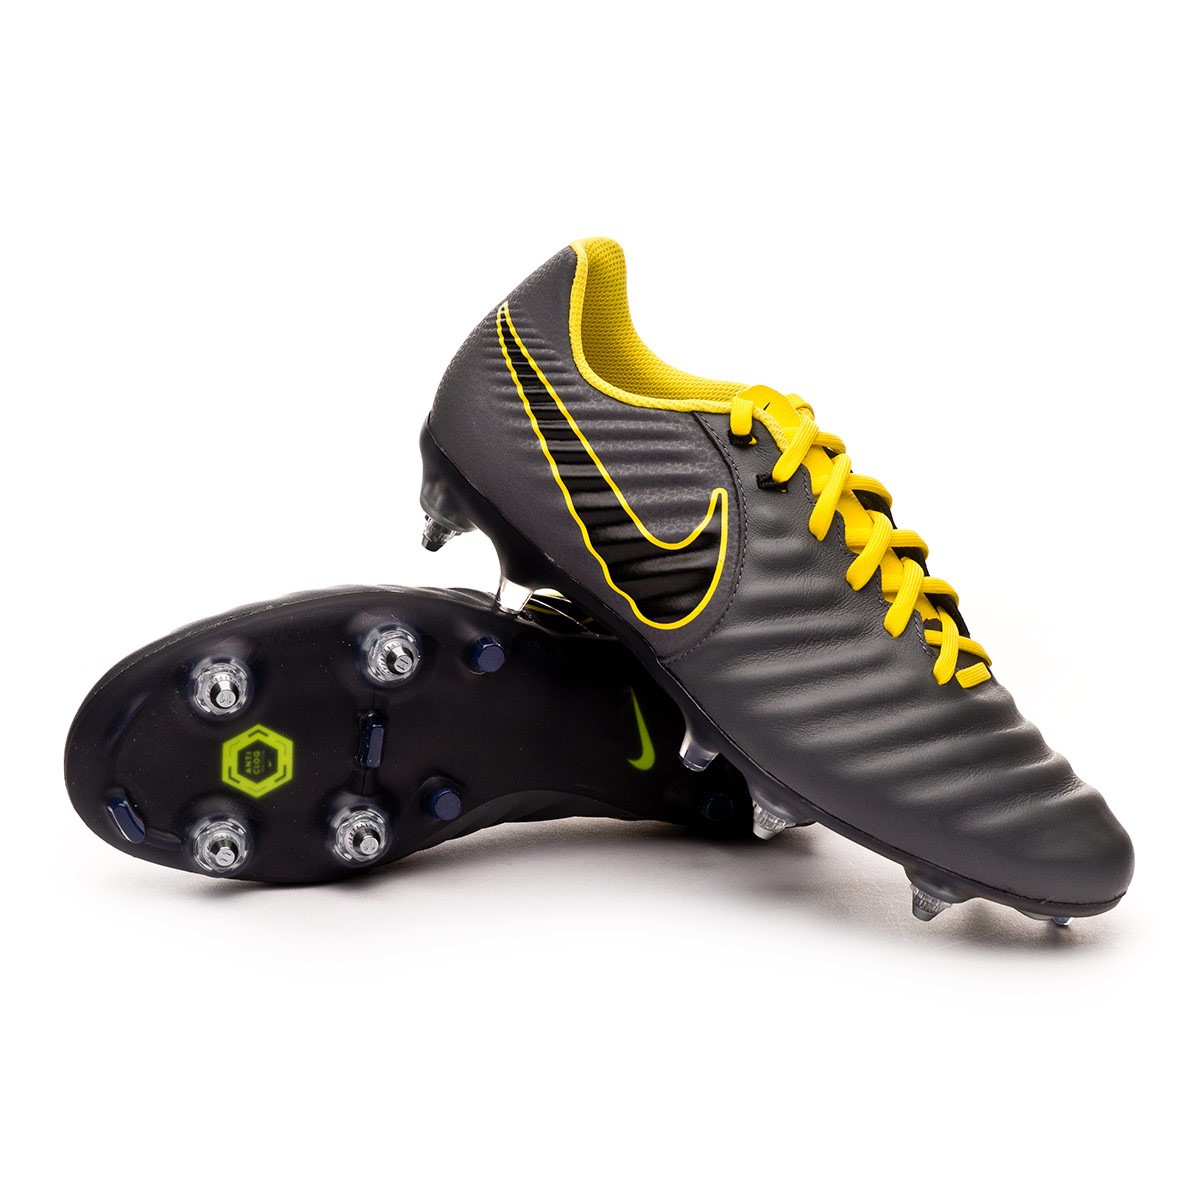 Bota de fútbol Nike Tiempo Legend VII Academy SG-Pro ACC Dark  grey-Black-Optical yellow - Tienda de fútbol Fútbol Emotion